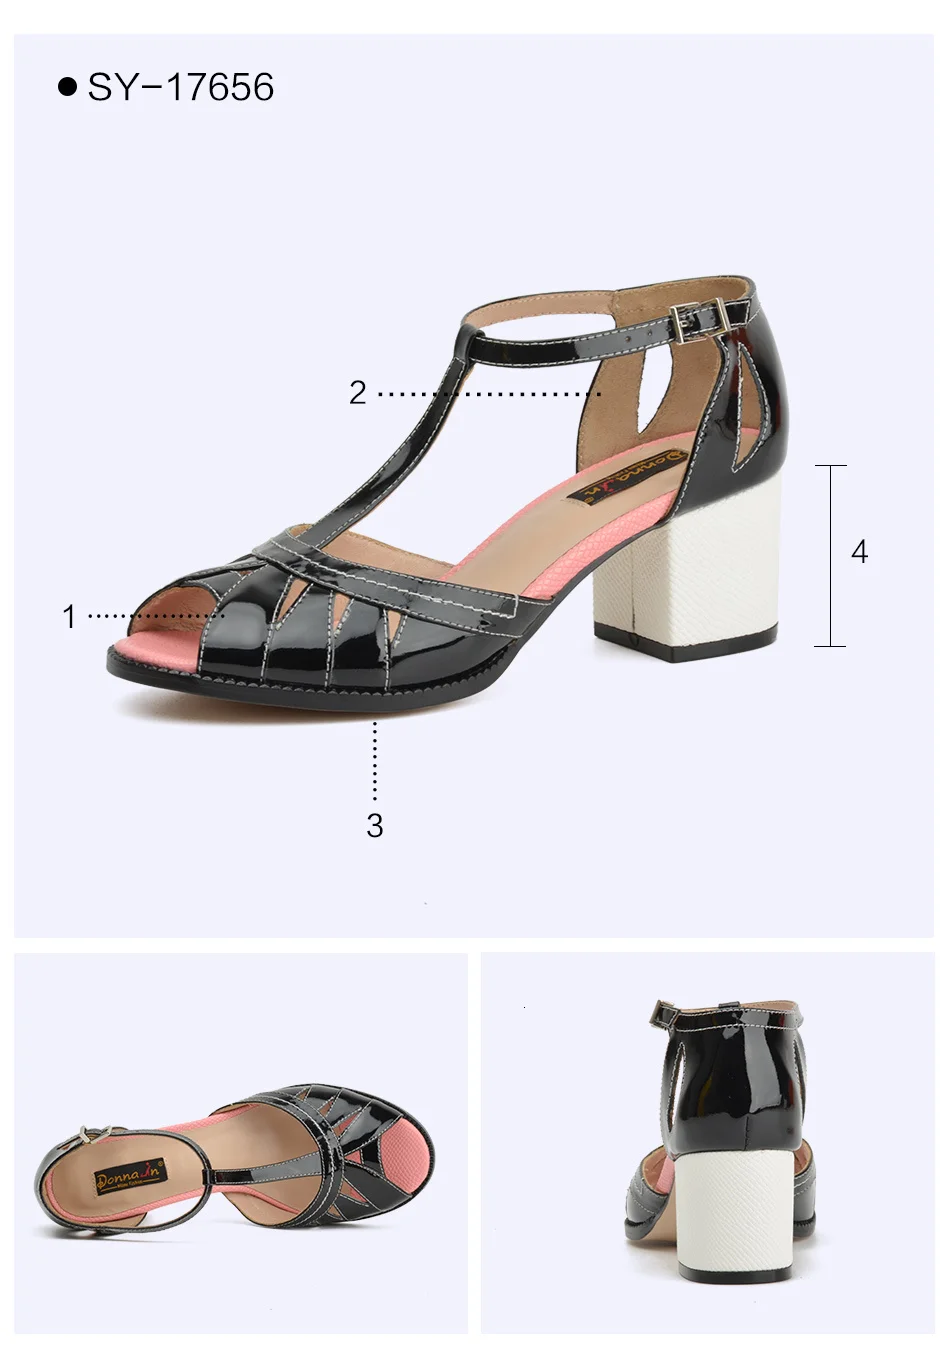 Donna-in/распродажа; летние женские босоножки на танкетке; обувь с открытым носком; женские босоножки из натуральной кожи на высоком каблуке